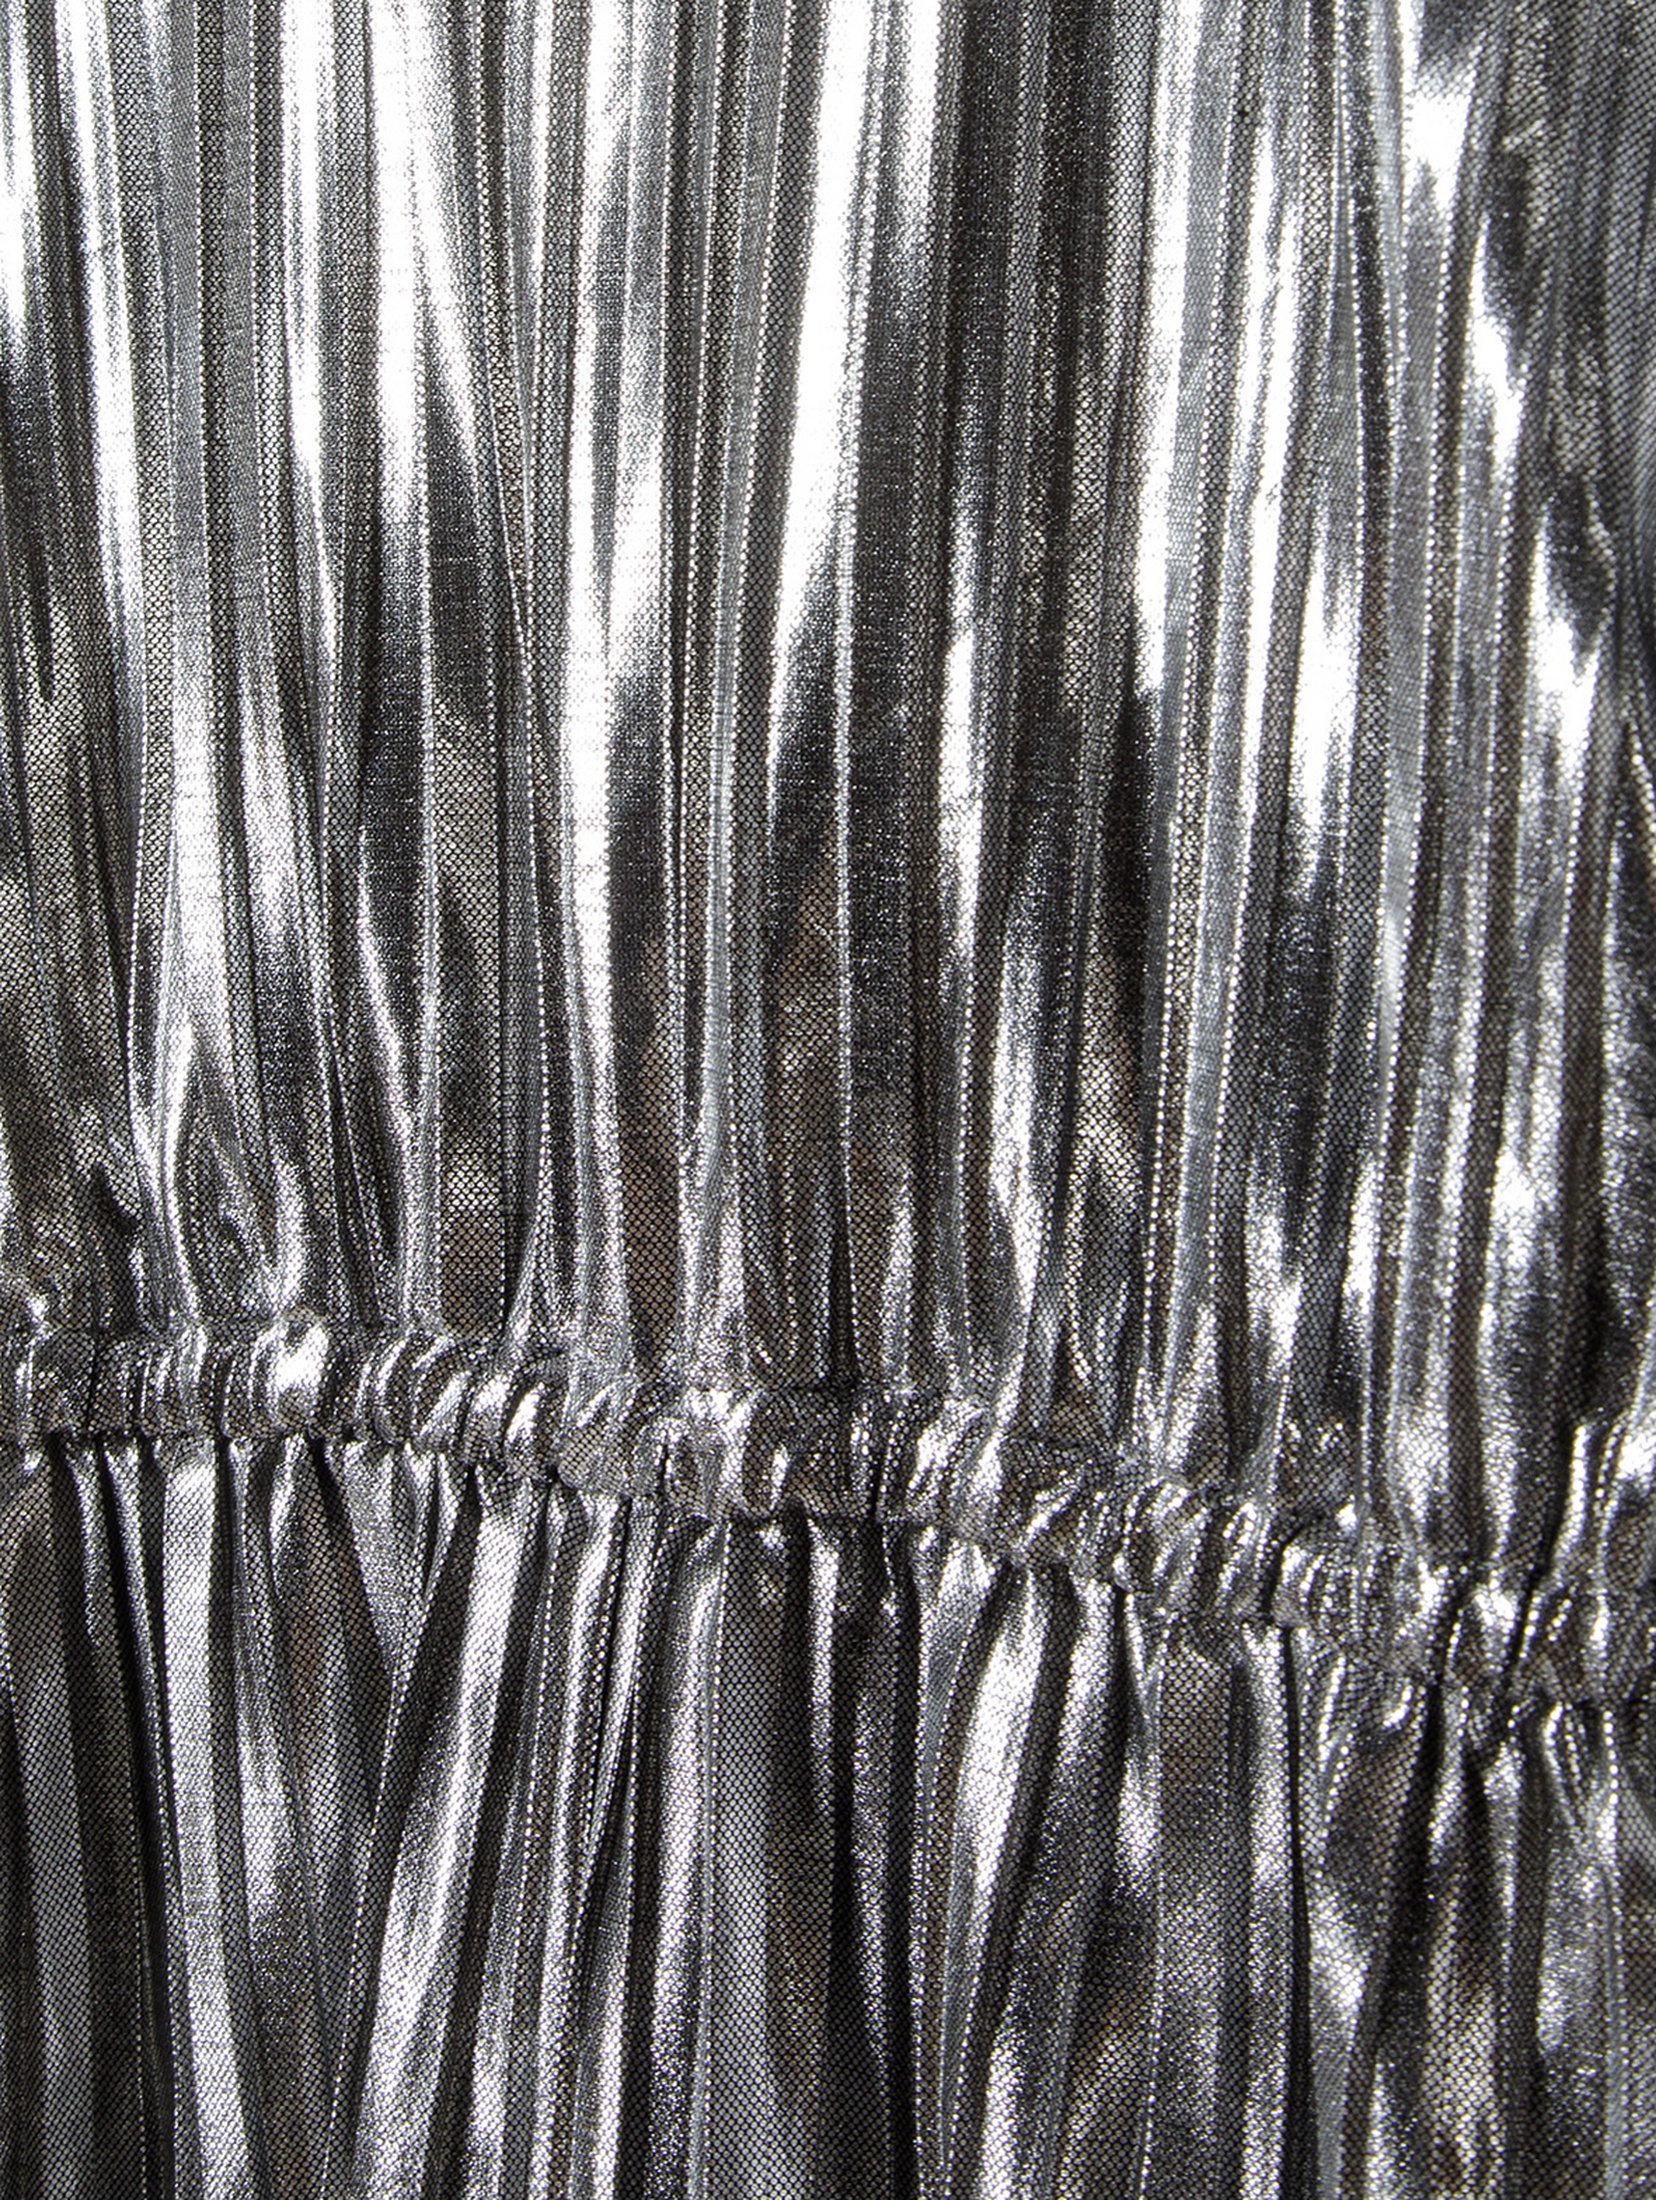 Metaliczny plisowany kombinezon długi dla małej dziewczynki - srebrny